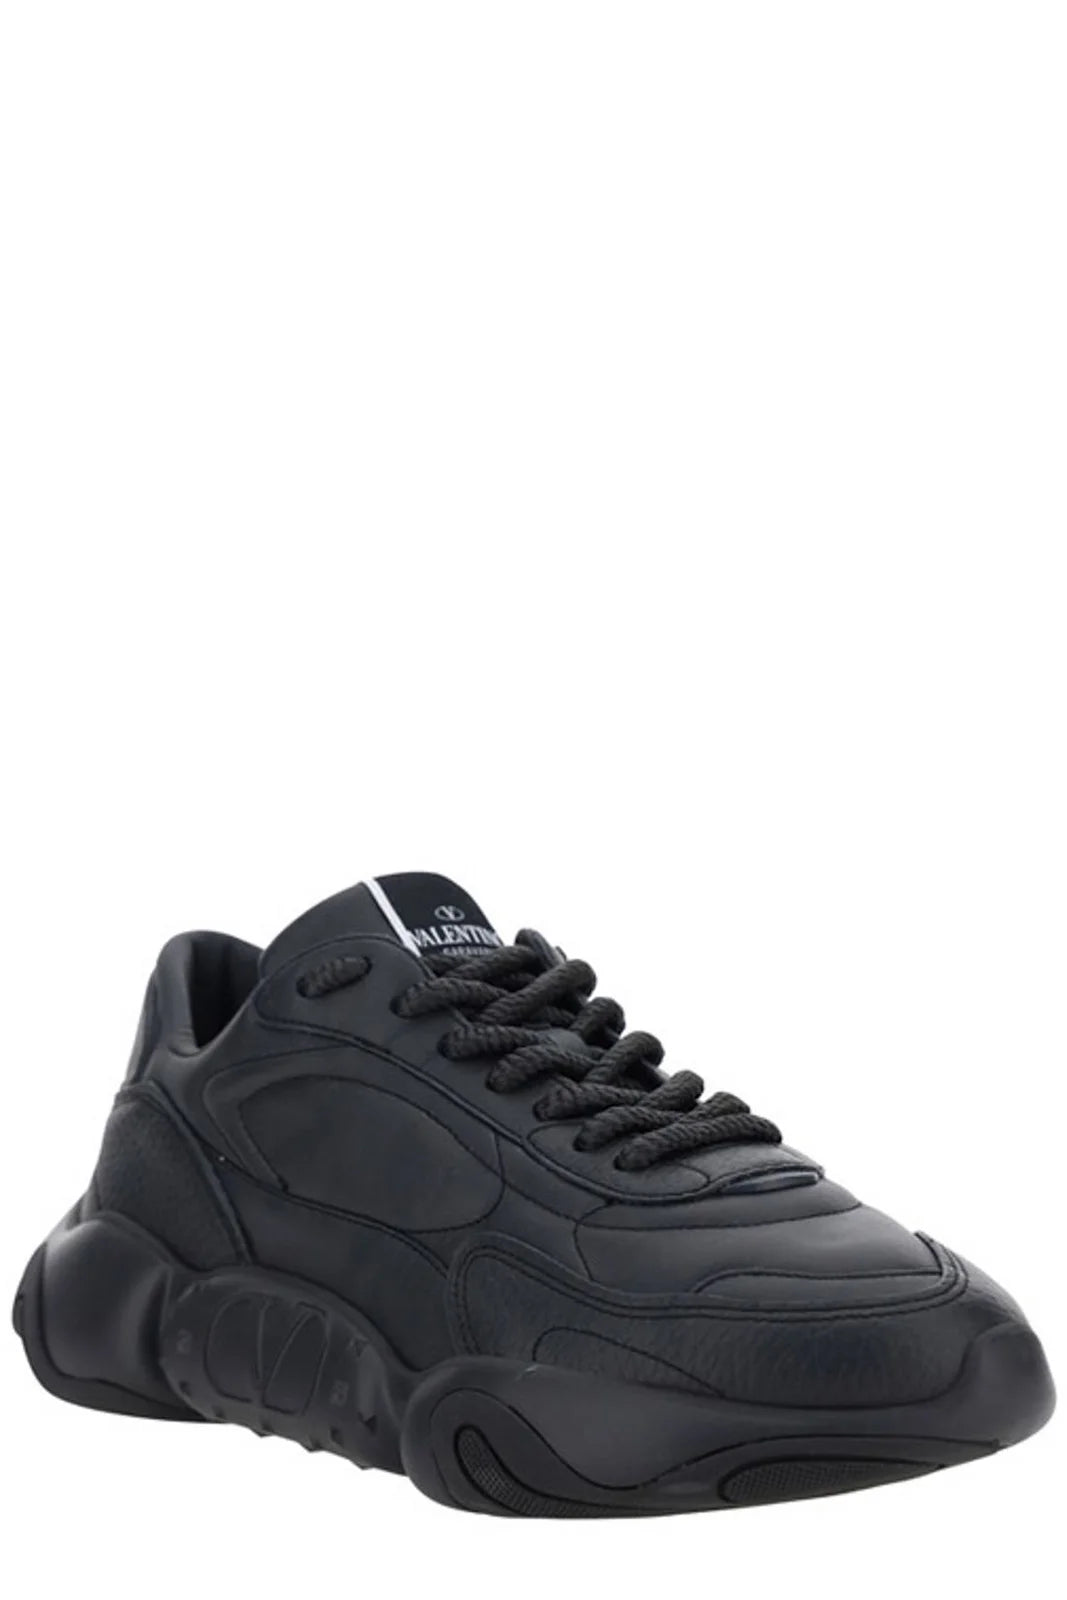 Valentino Black Calf Leather Garavani Sneakers - DEA STILOSA MILANO